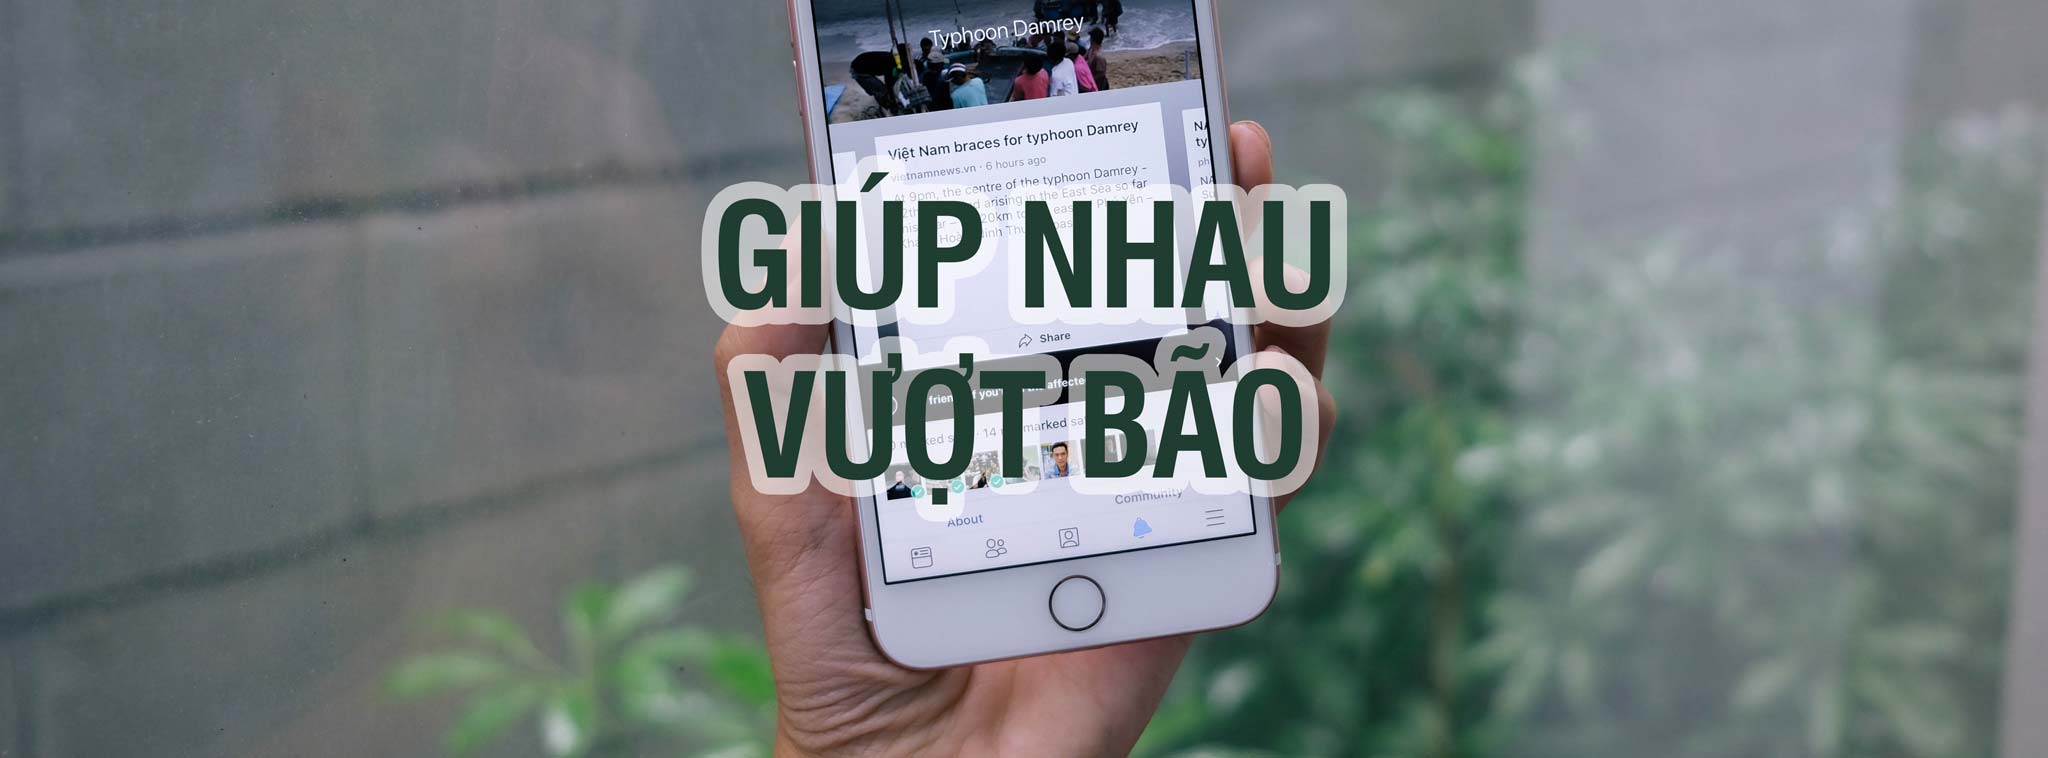 Hub Facebook về bão tại Nha Trang: nơi chia sẻ thông tin, giúp đỡ nhau khi có thảm họa